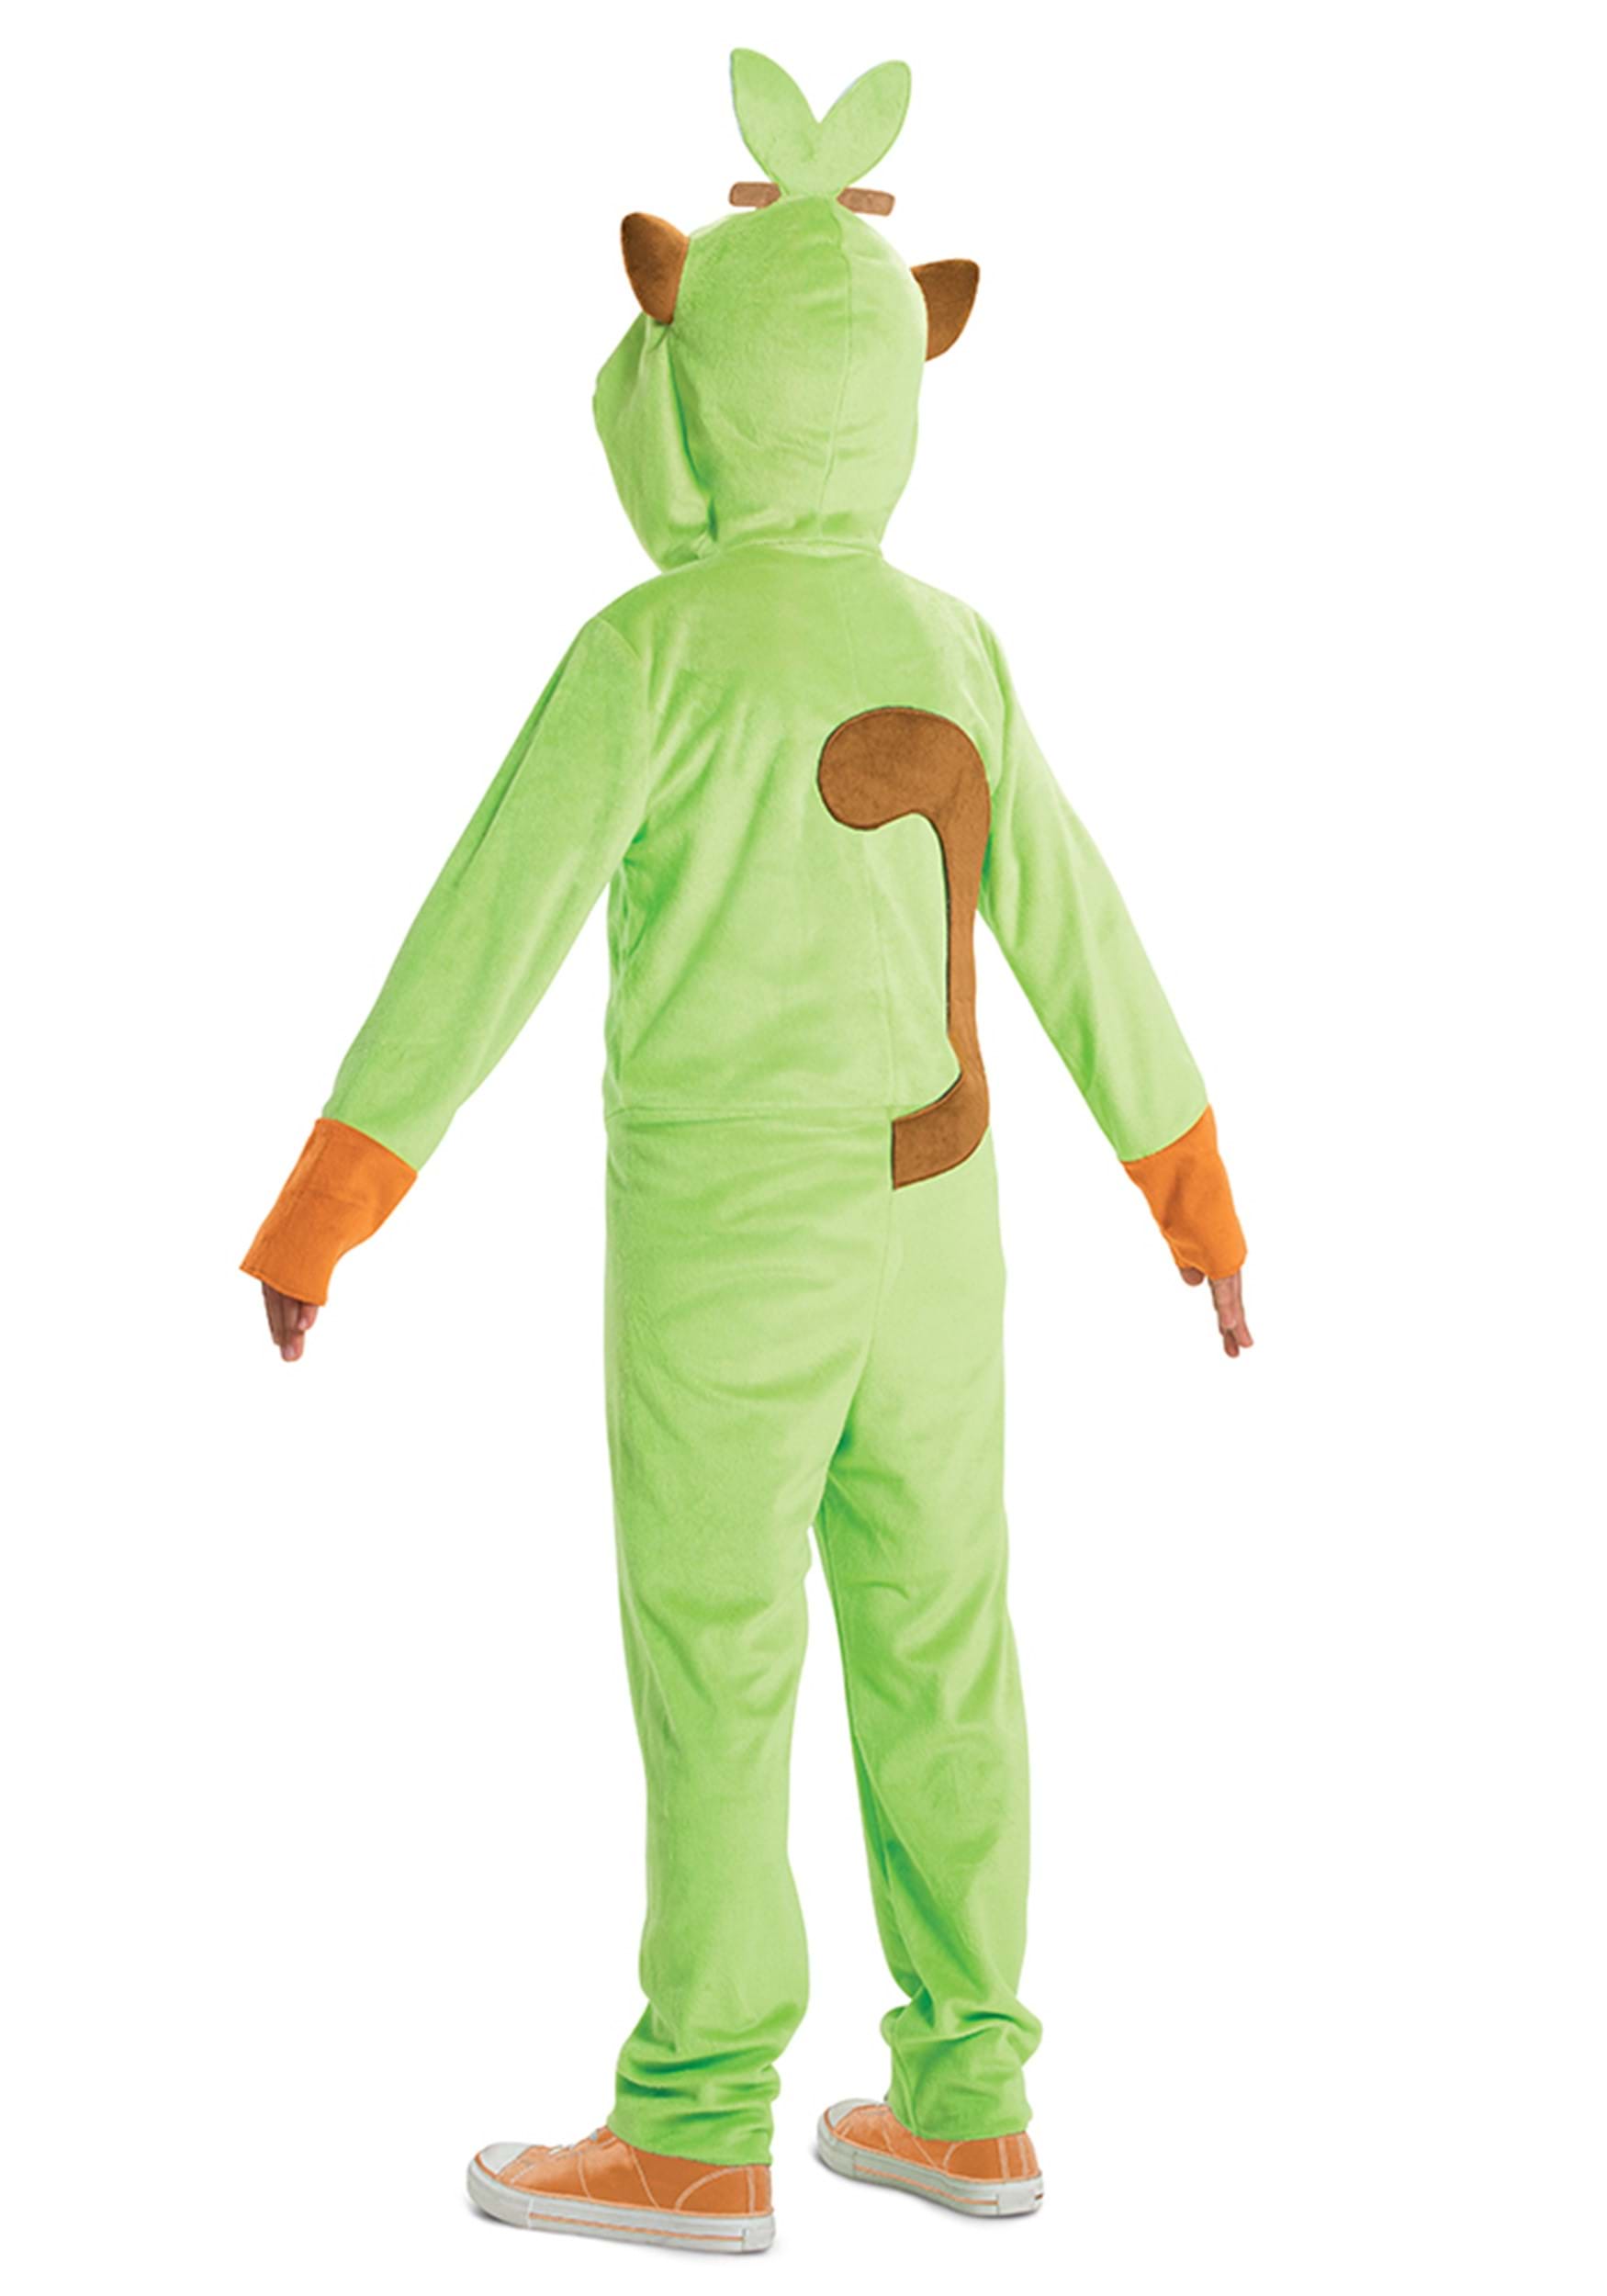 Pokémon Grookey Hooded Jumpsuit Kid's Costume